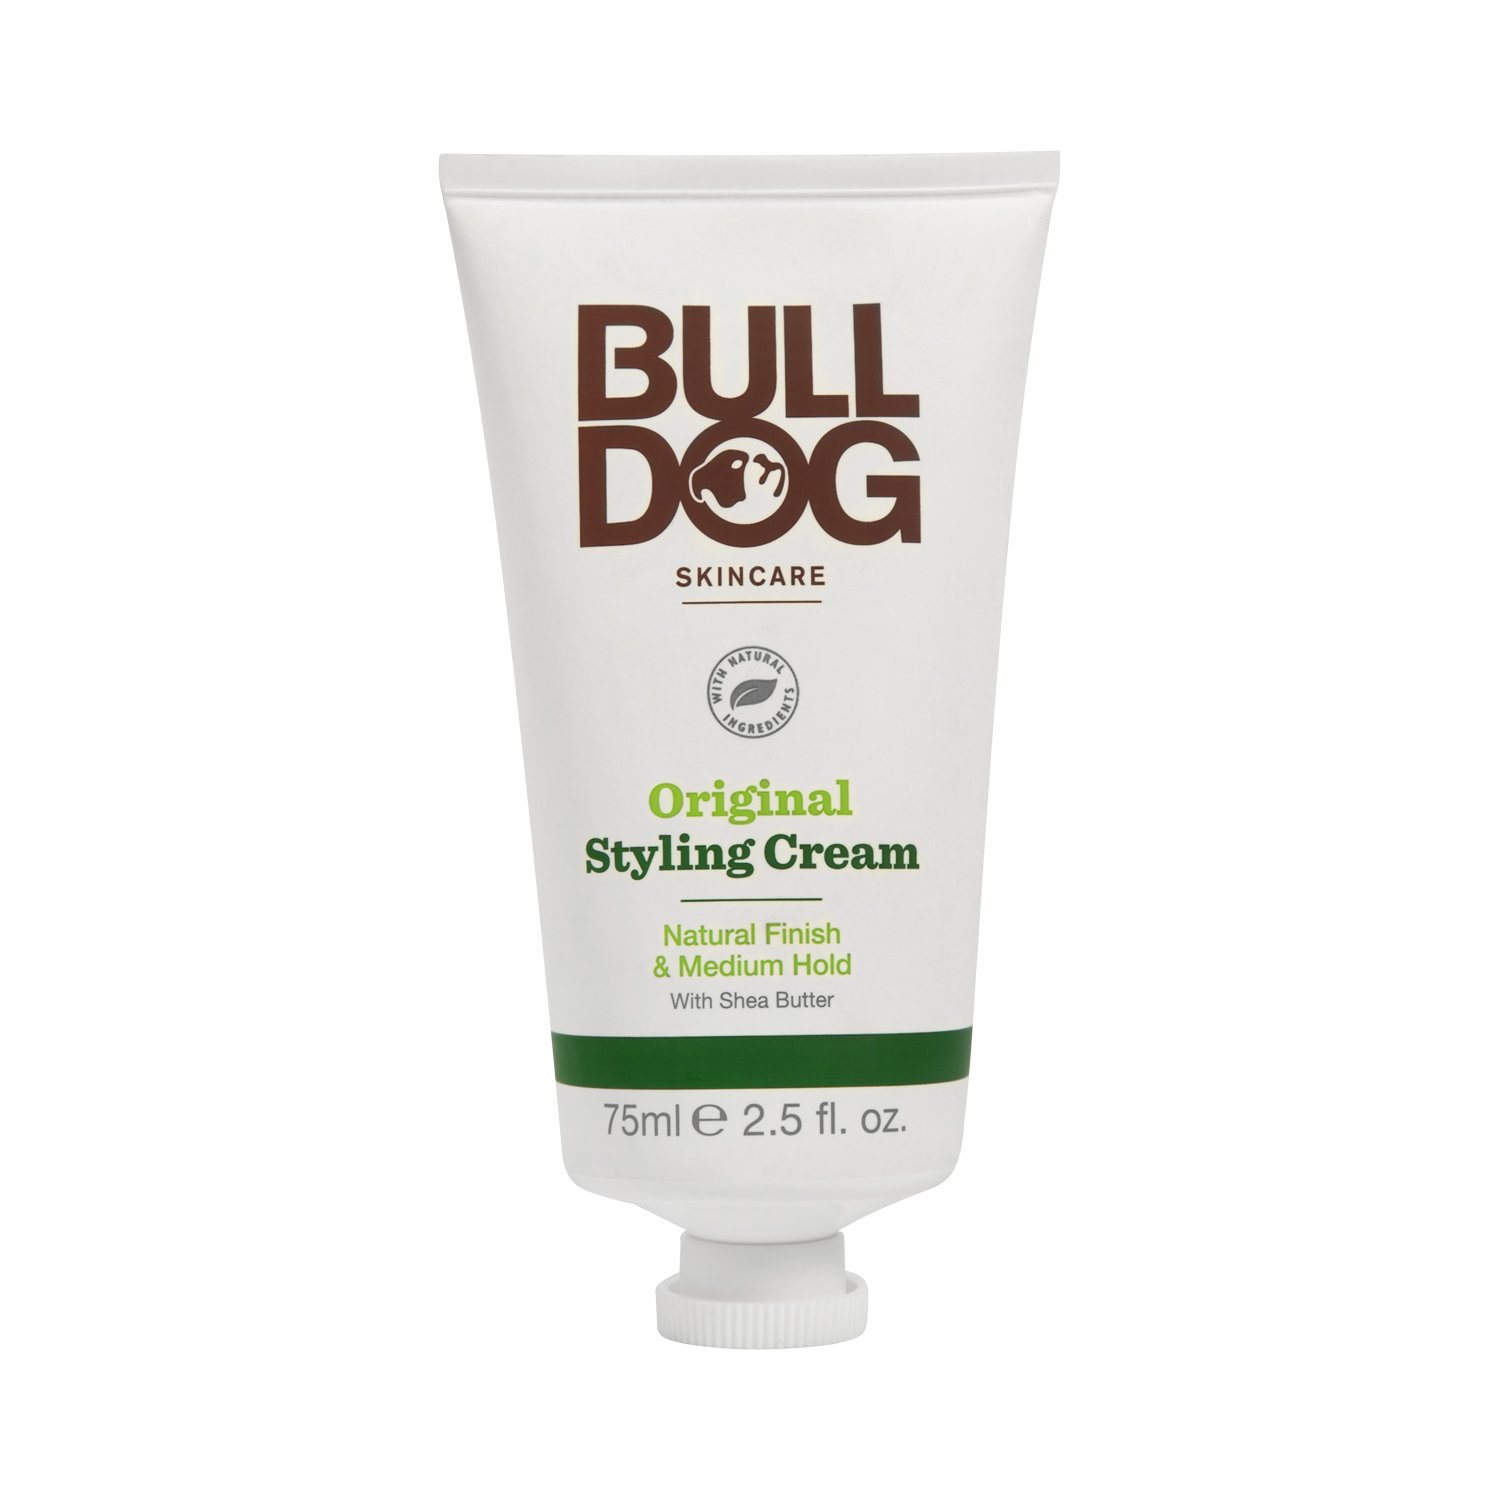 Bulldog - Original Styling Cream - mittlerer Halt und natürliches Finish